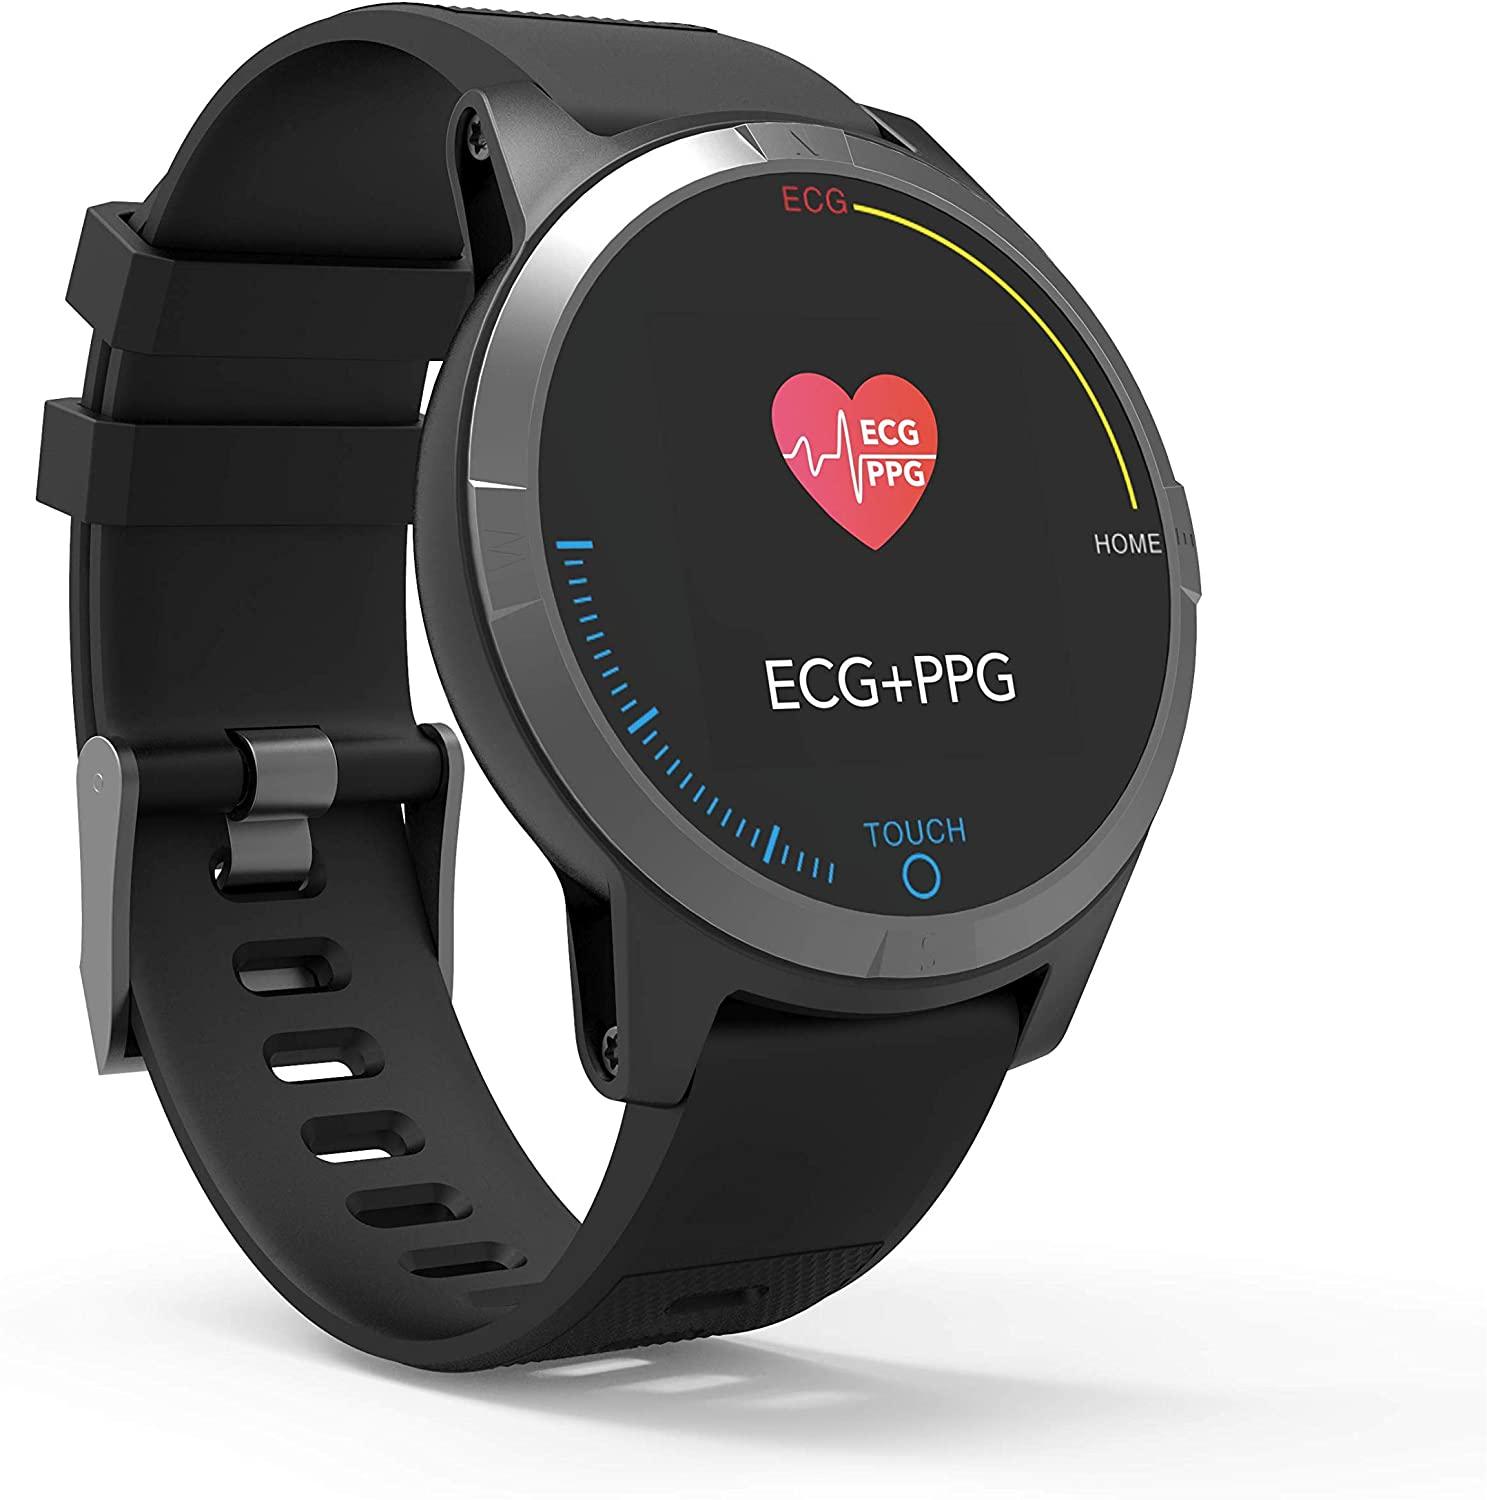 Xiaomi pone a la venta un reloj capaz de monitorizar la presión arterial -  Noticias Xiaomi - XIAOMIADICTOS